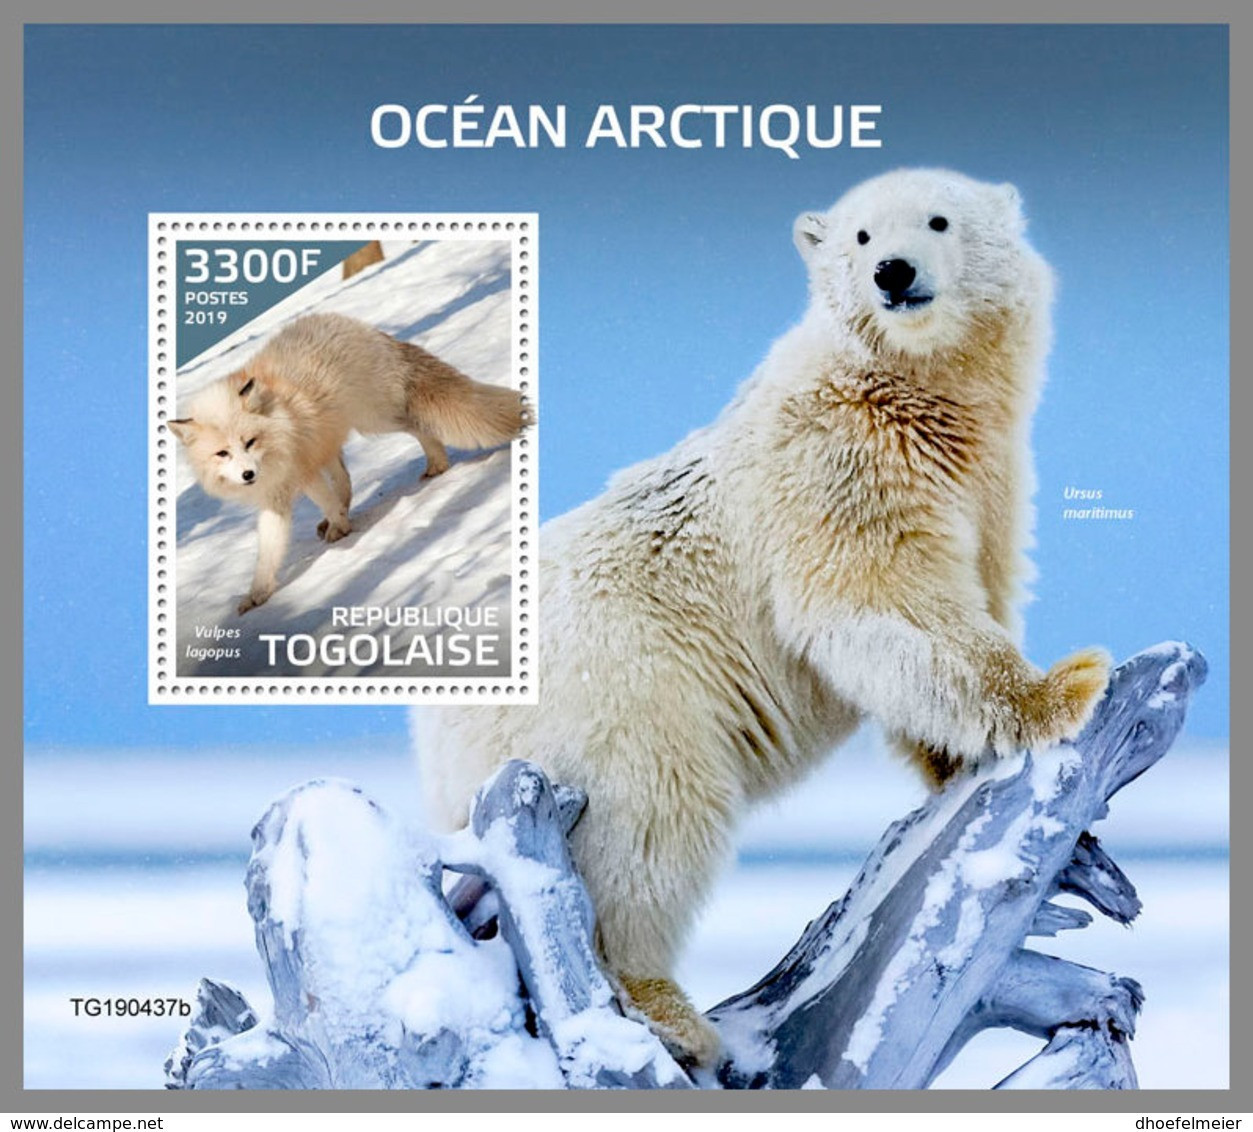 TOGO 2019 MNH Arctic Oceans Arktische Tierwelt Ocean Arctique S/S - OFFICIAL ISSUE - DH1946 - Arctic Wildlife